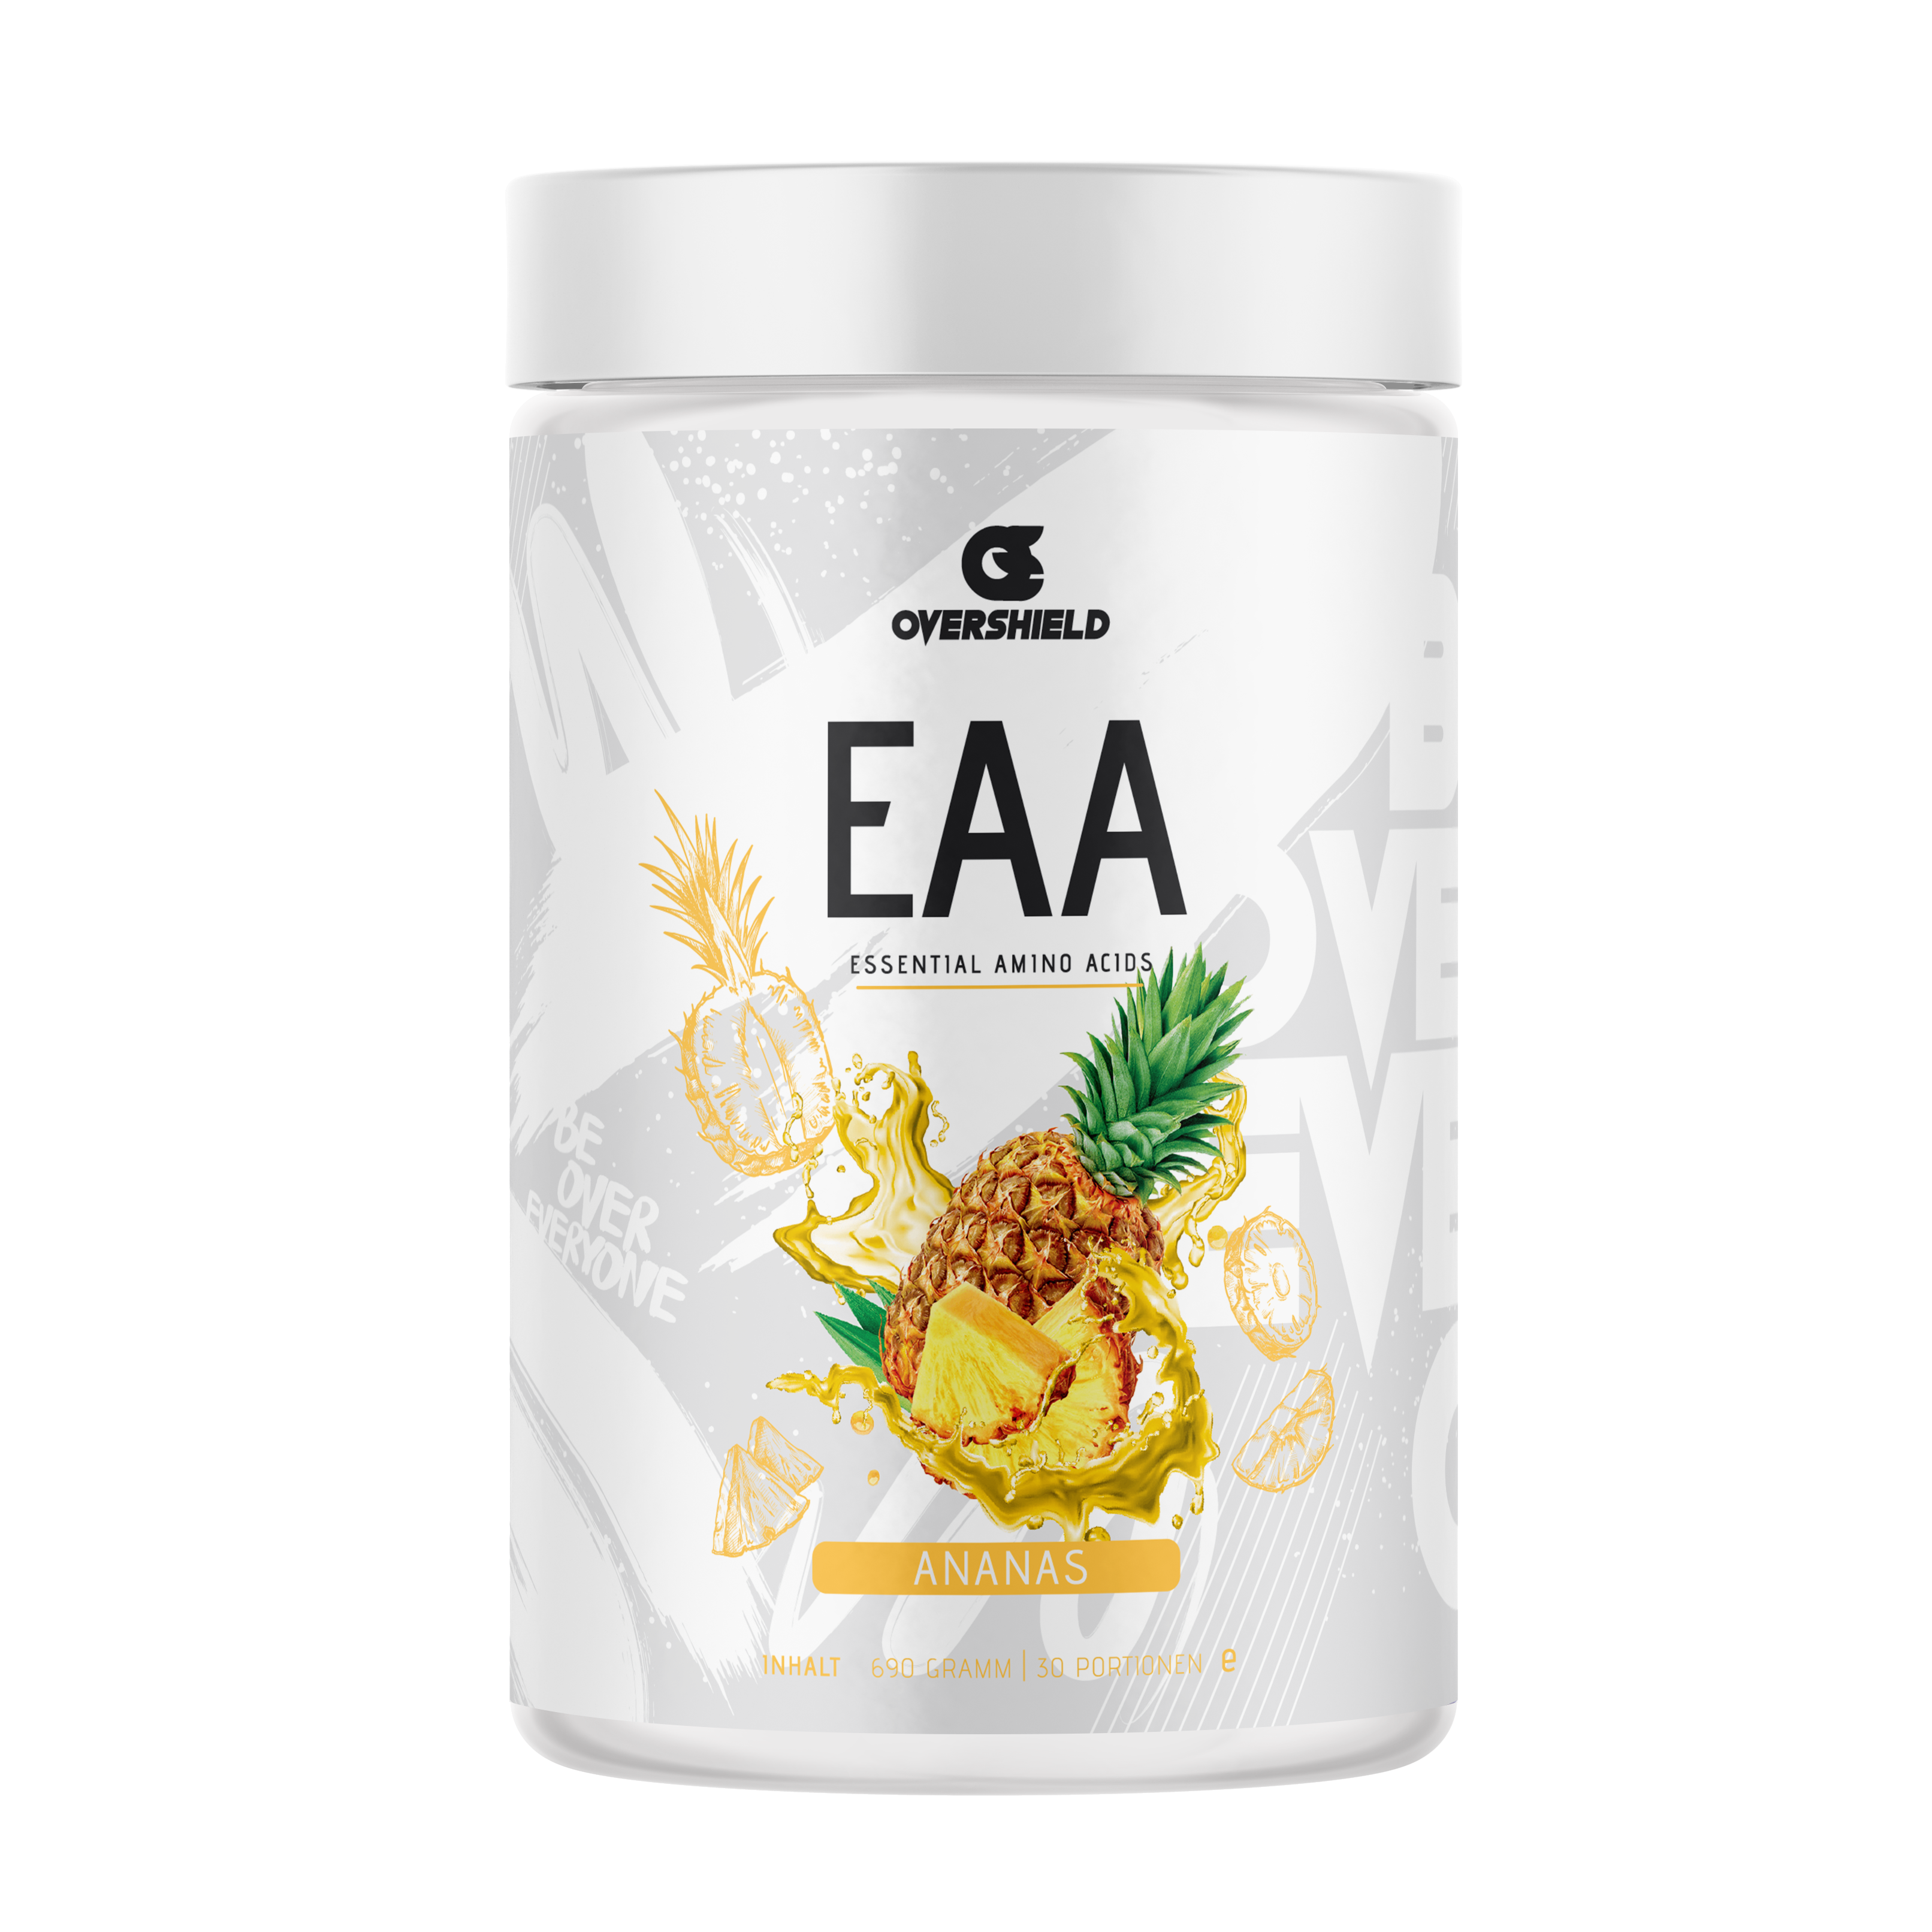 Ananas EAA Aminosäuren in weißer Dose von Overshield. Der Inhalt entspricht 33 Portionen. 